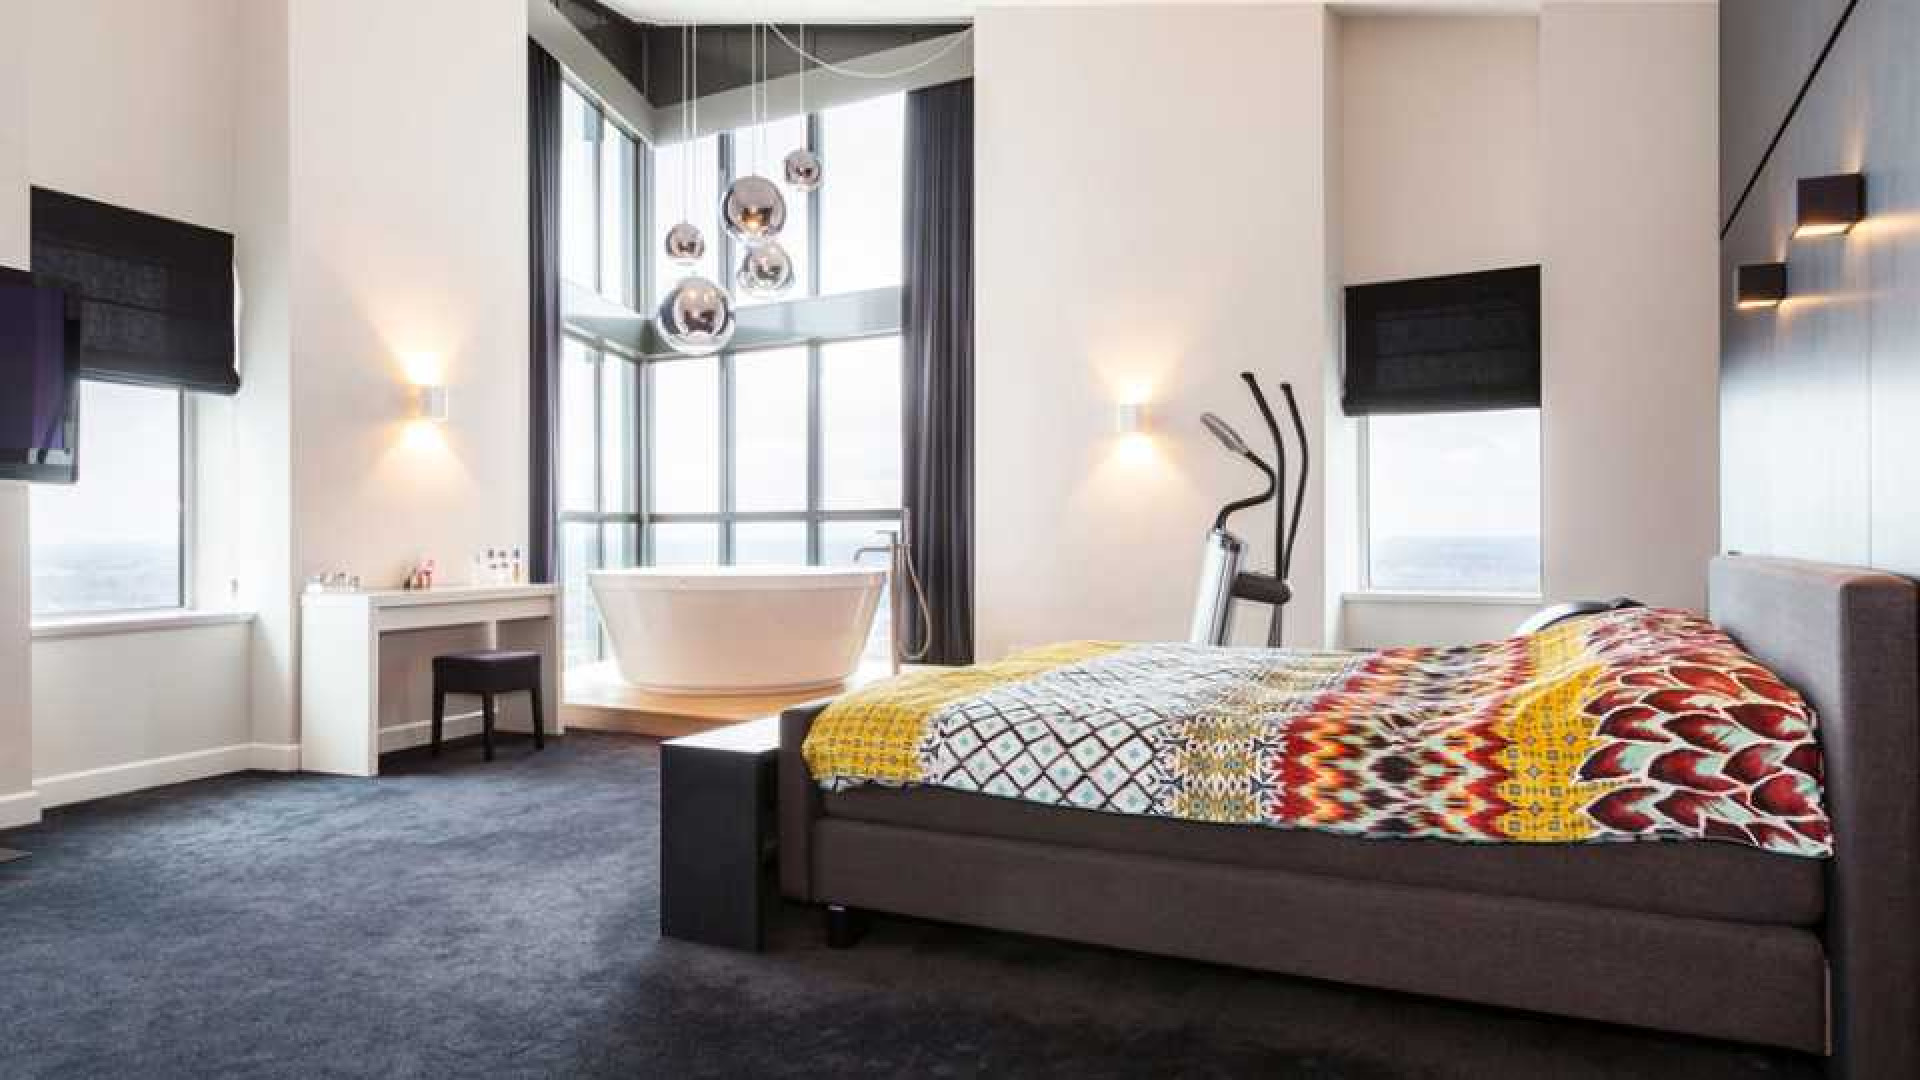 Amanda Krabbe en haar man Harrie Kolen zetten hun luxe penthouse in stille verkoop. Zie foto's 18